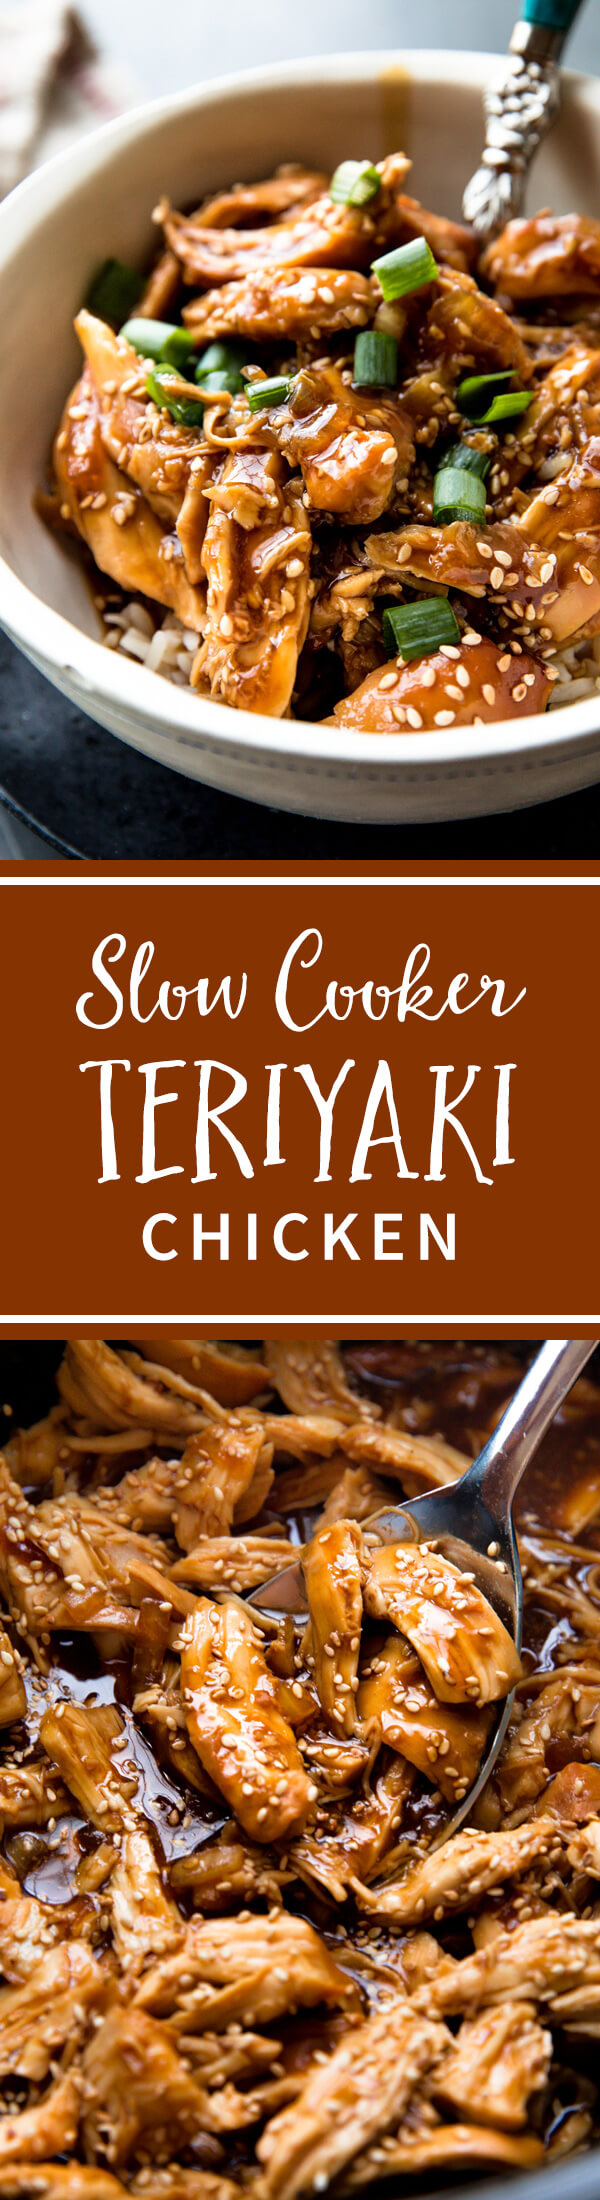 Mettez de la sauce teriyaki maison rapide et du poulet dans votre mijoteuse, réglez-la et oubliez-la! Ce délicieux poulet teriyaki au miel à la mijoteuse est si facile. Recette sur sallysbakingaddiction.com